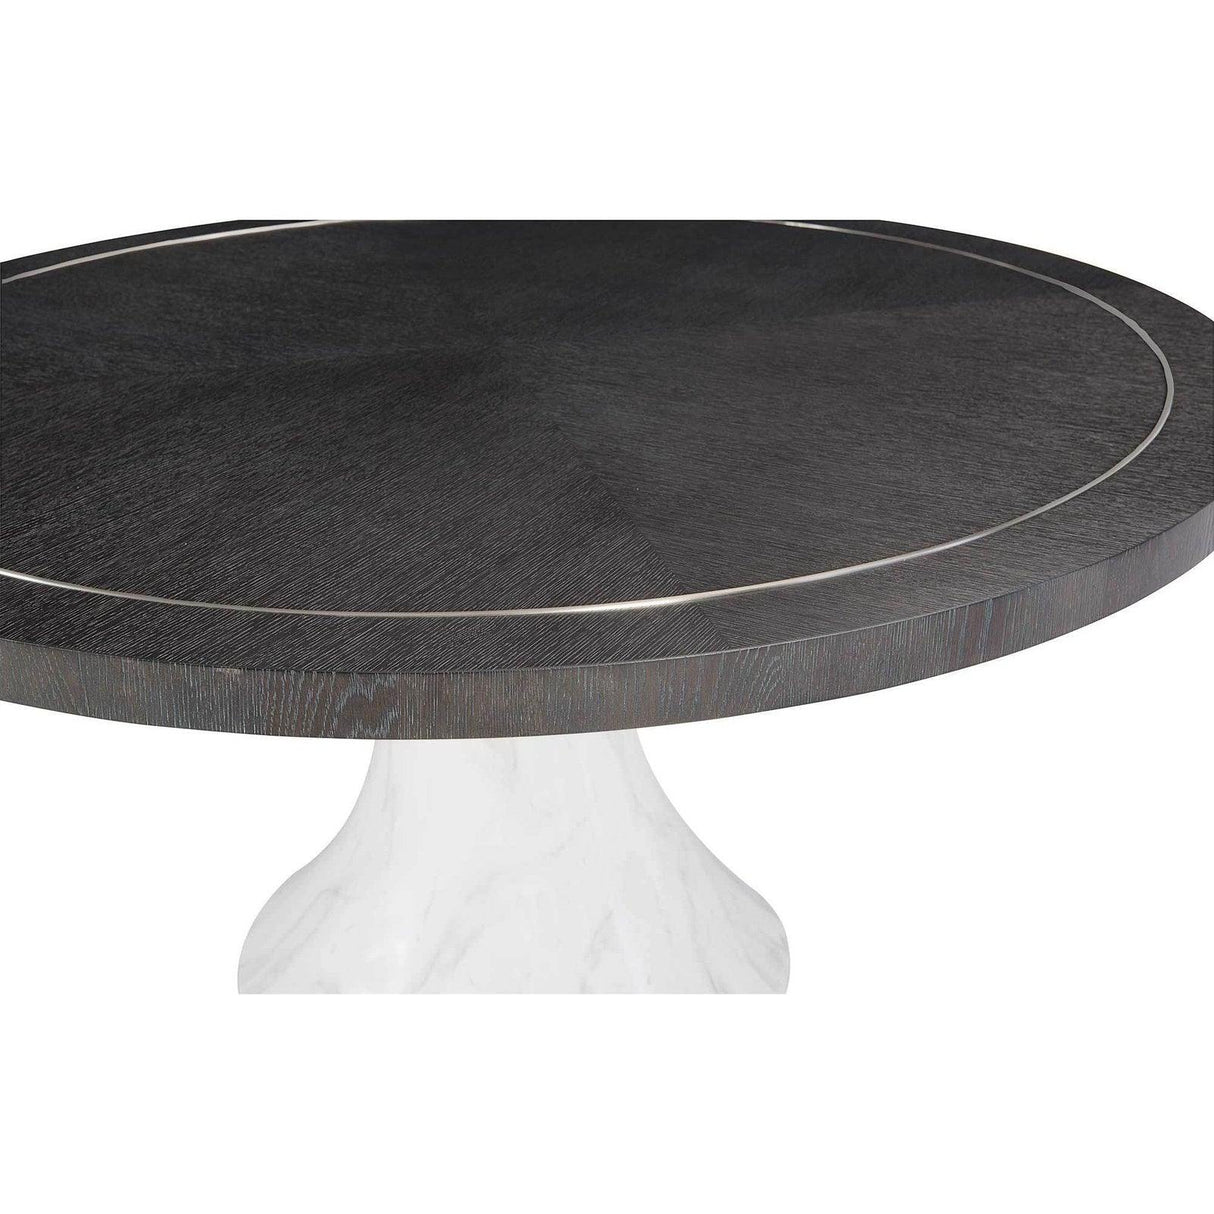 Bernhardt Decorage Round Dining Table - Home Elegance USA